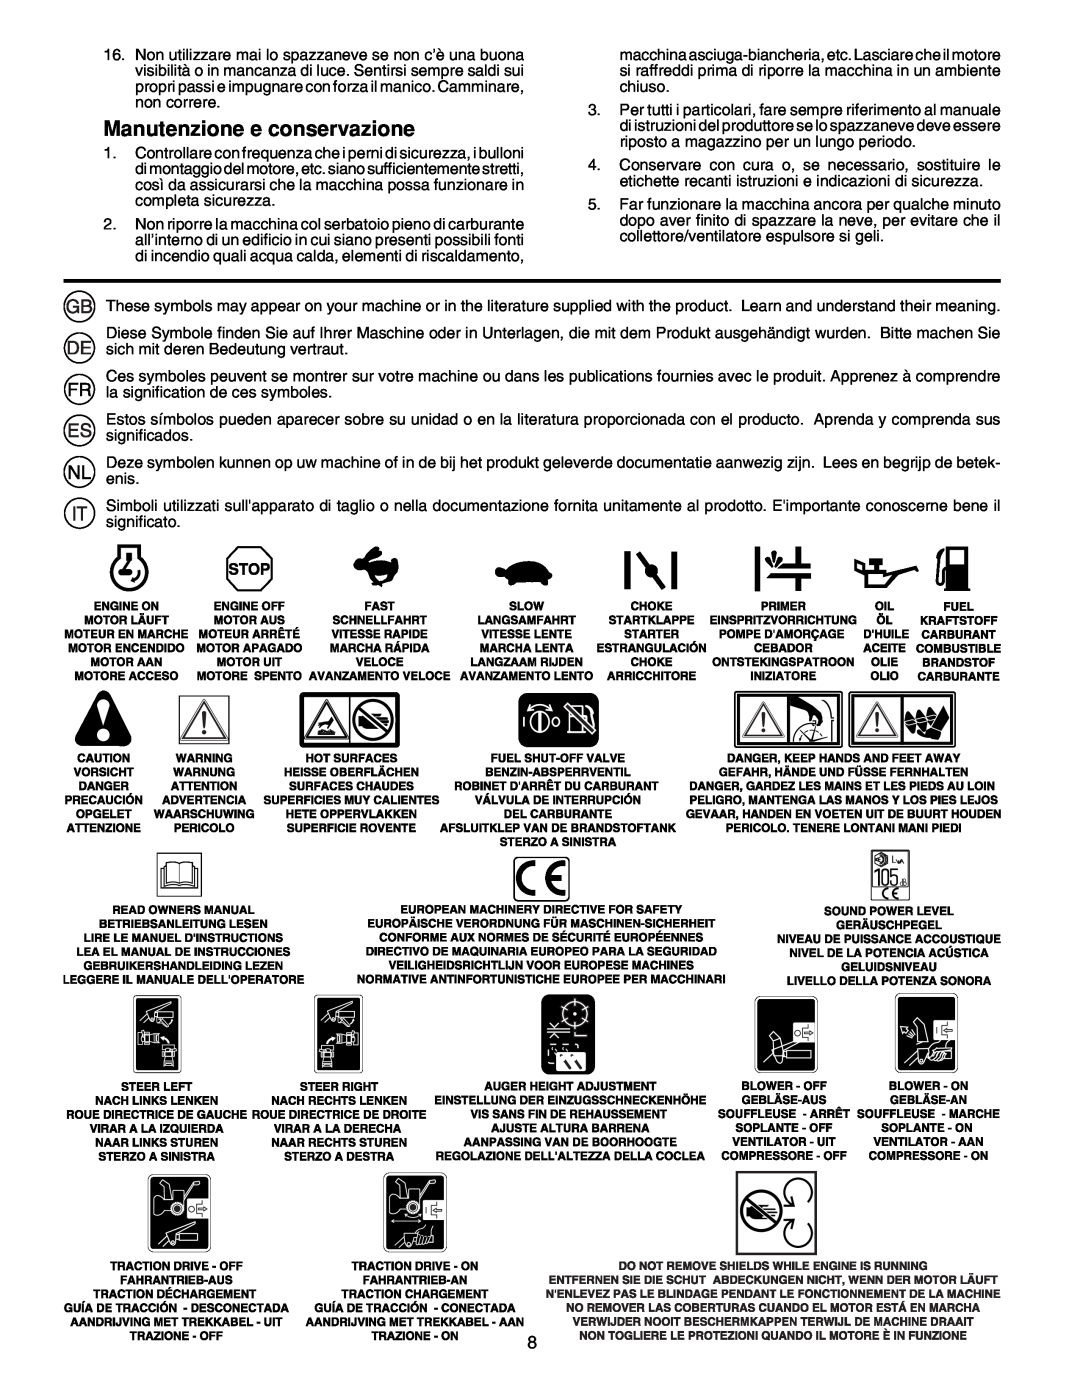 McCulloch PM105, PM55, PM85 instruction manual Manutenzione e conservazione 